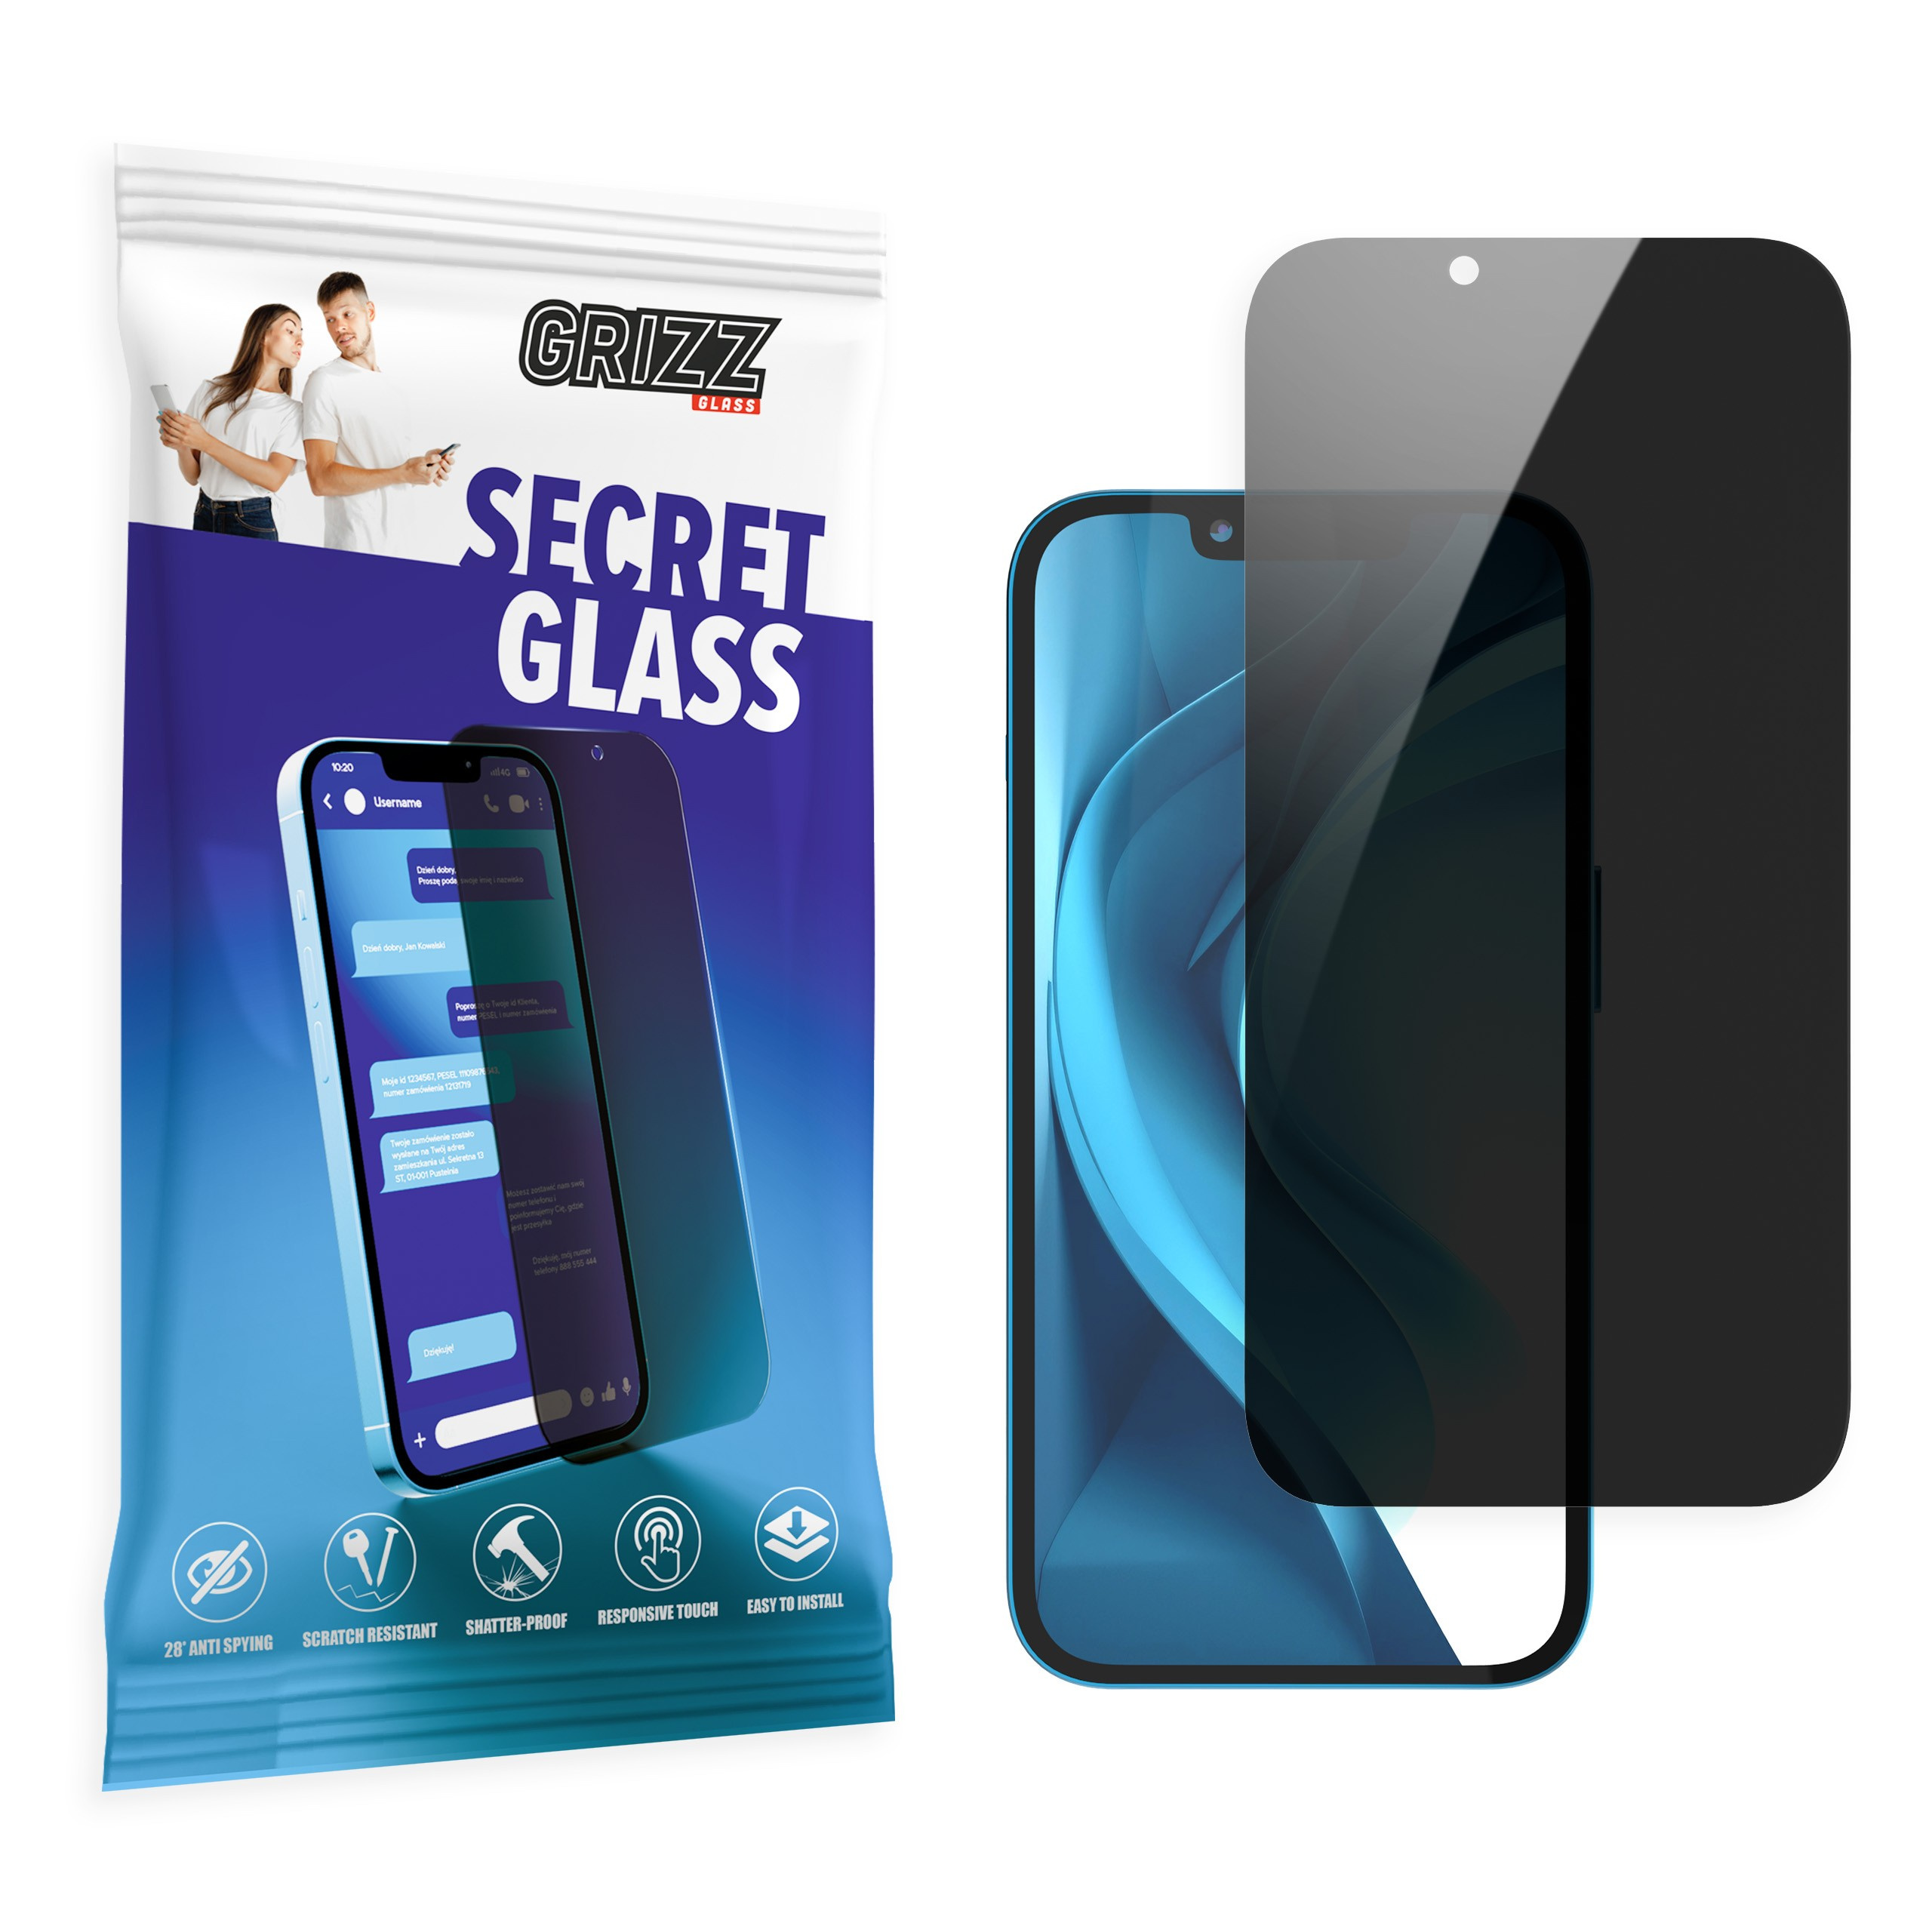 GrizzGlass SecretGlass LG X2 2019